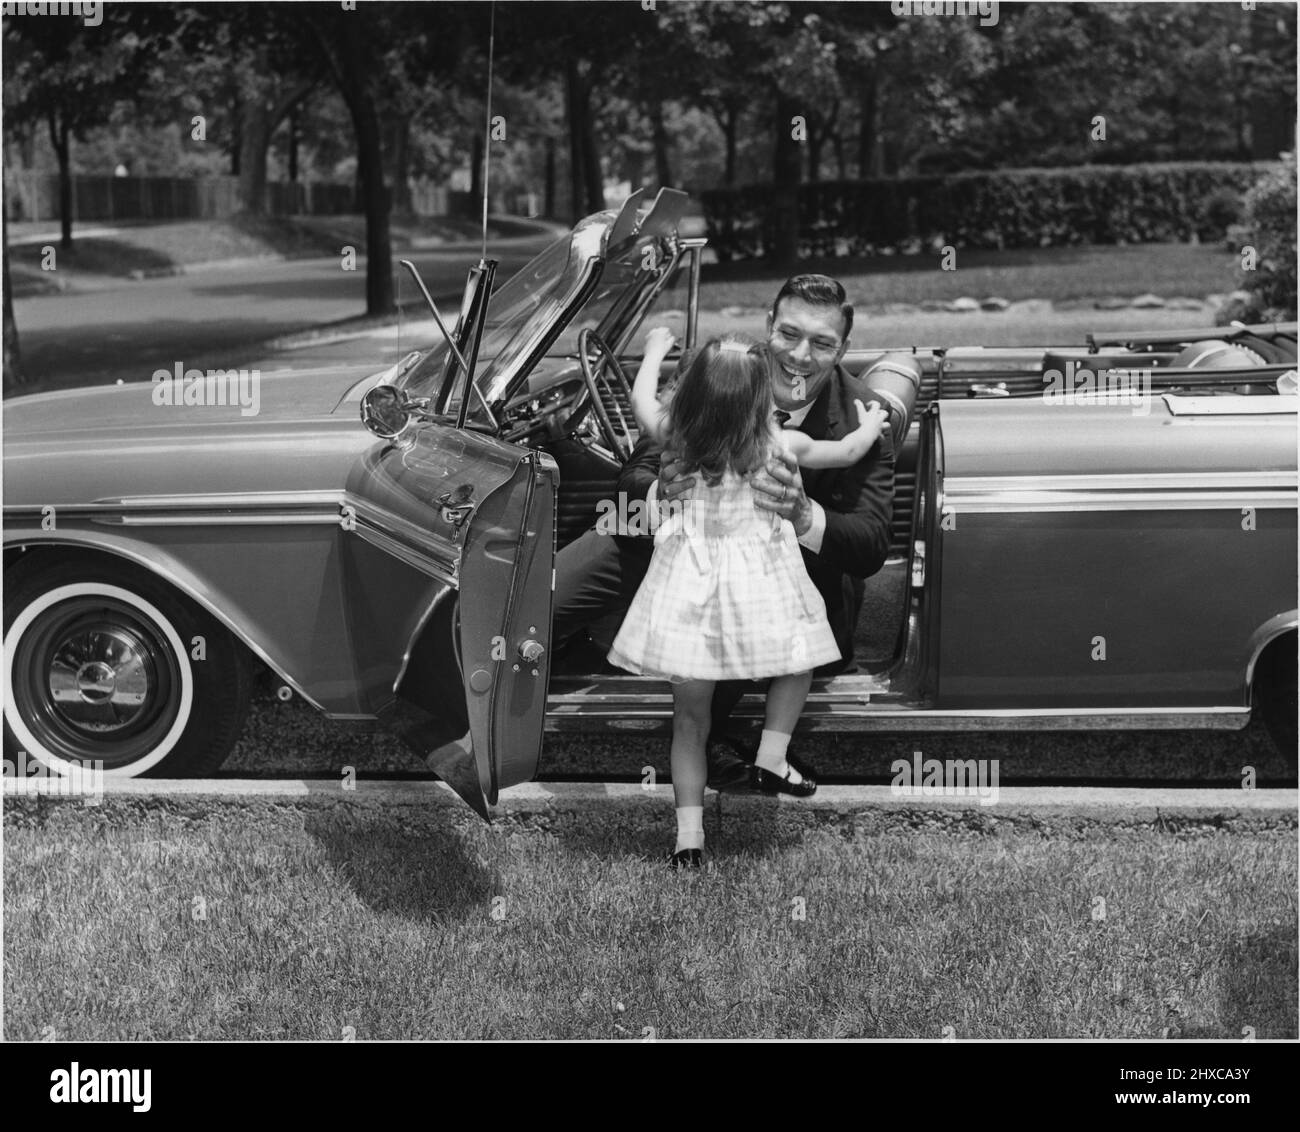 Das kleine Mädchen in einem Kleid rennt, um den Vater zu begrüßen, der gerade in einem Cabriolet fuhr Stockfoto